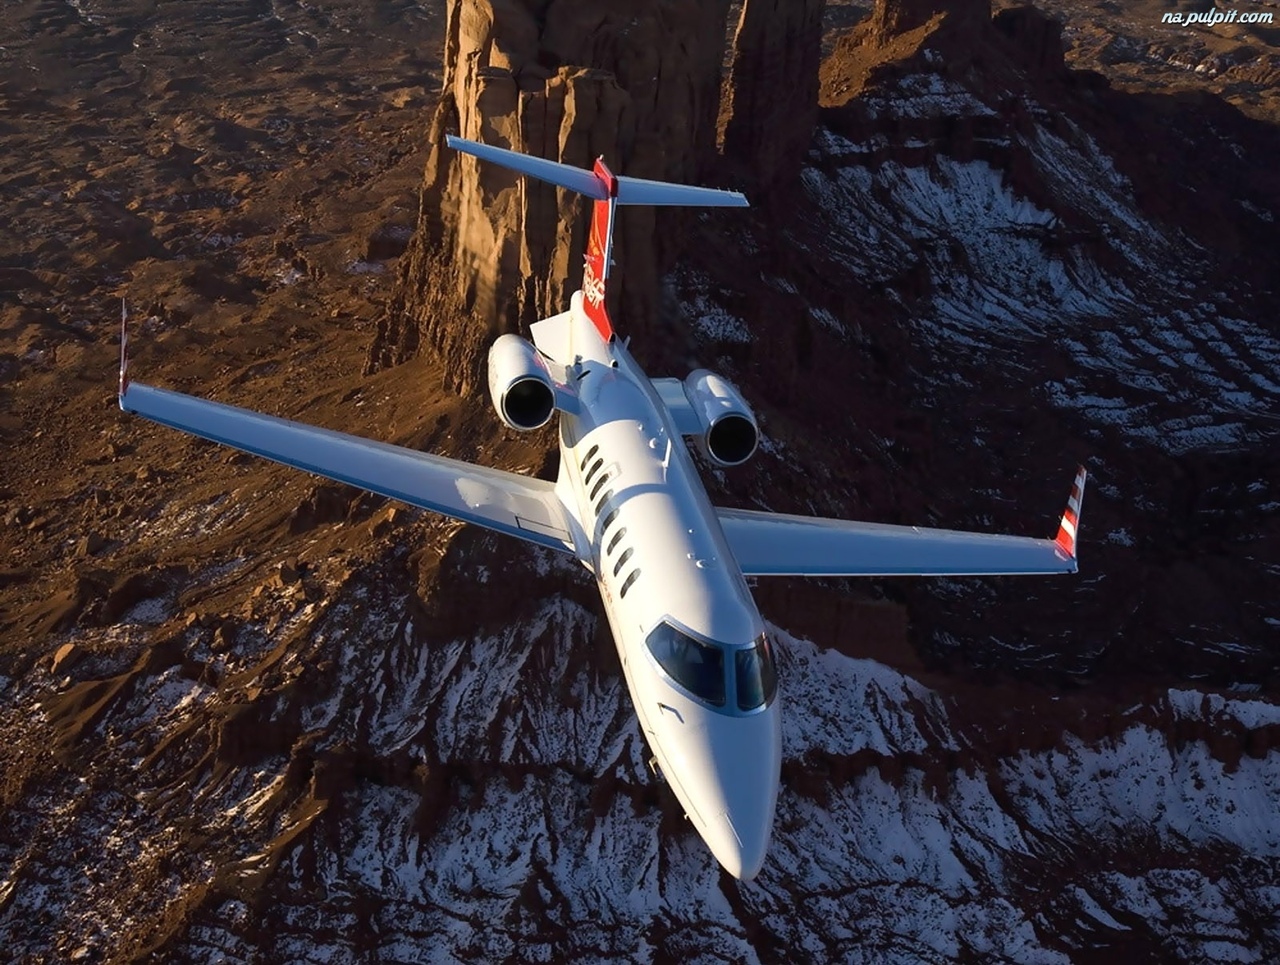 Bombardier Learjet 45